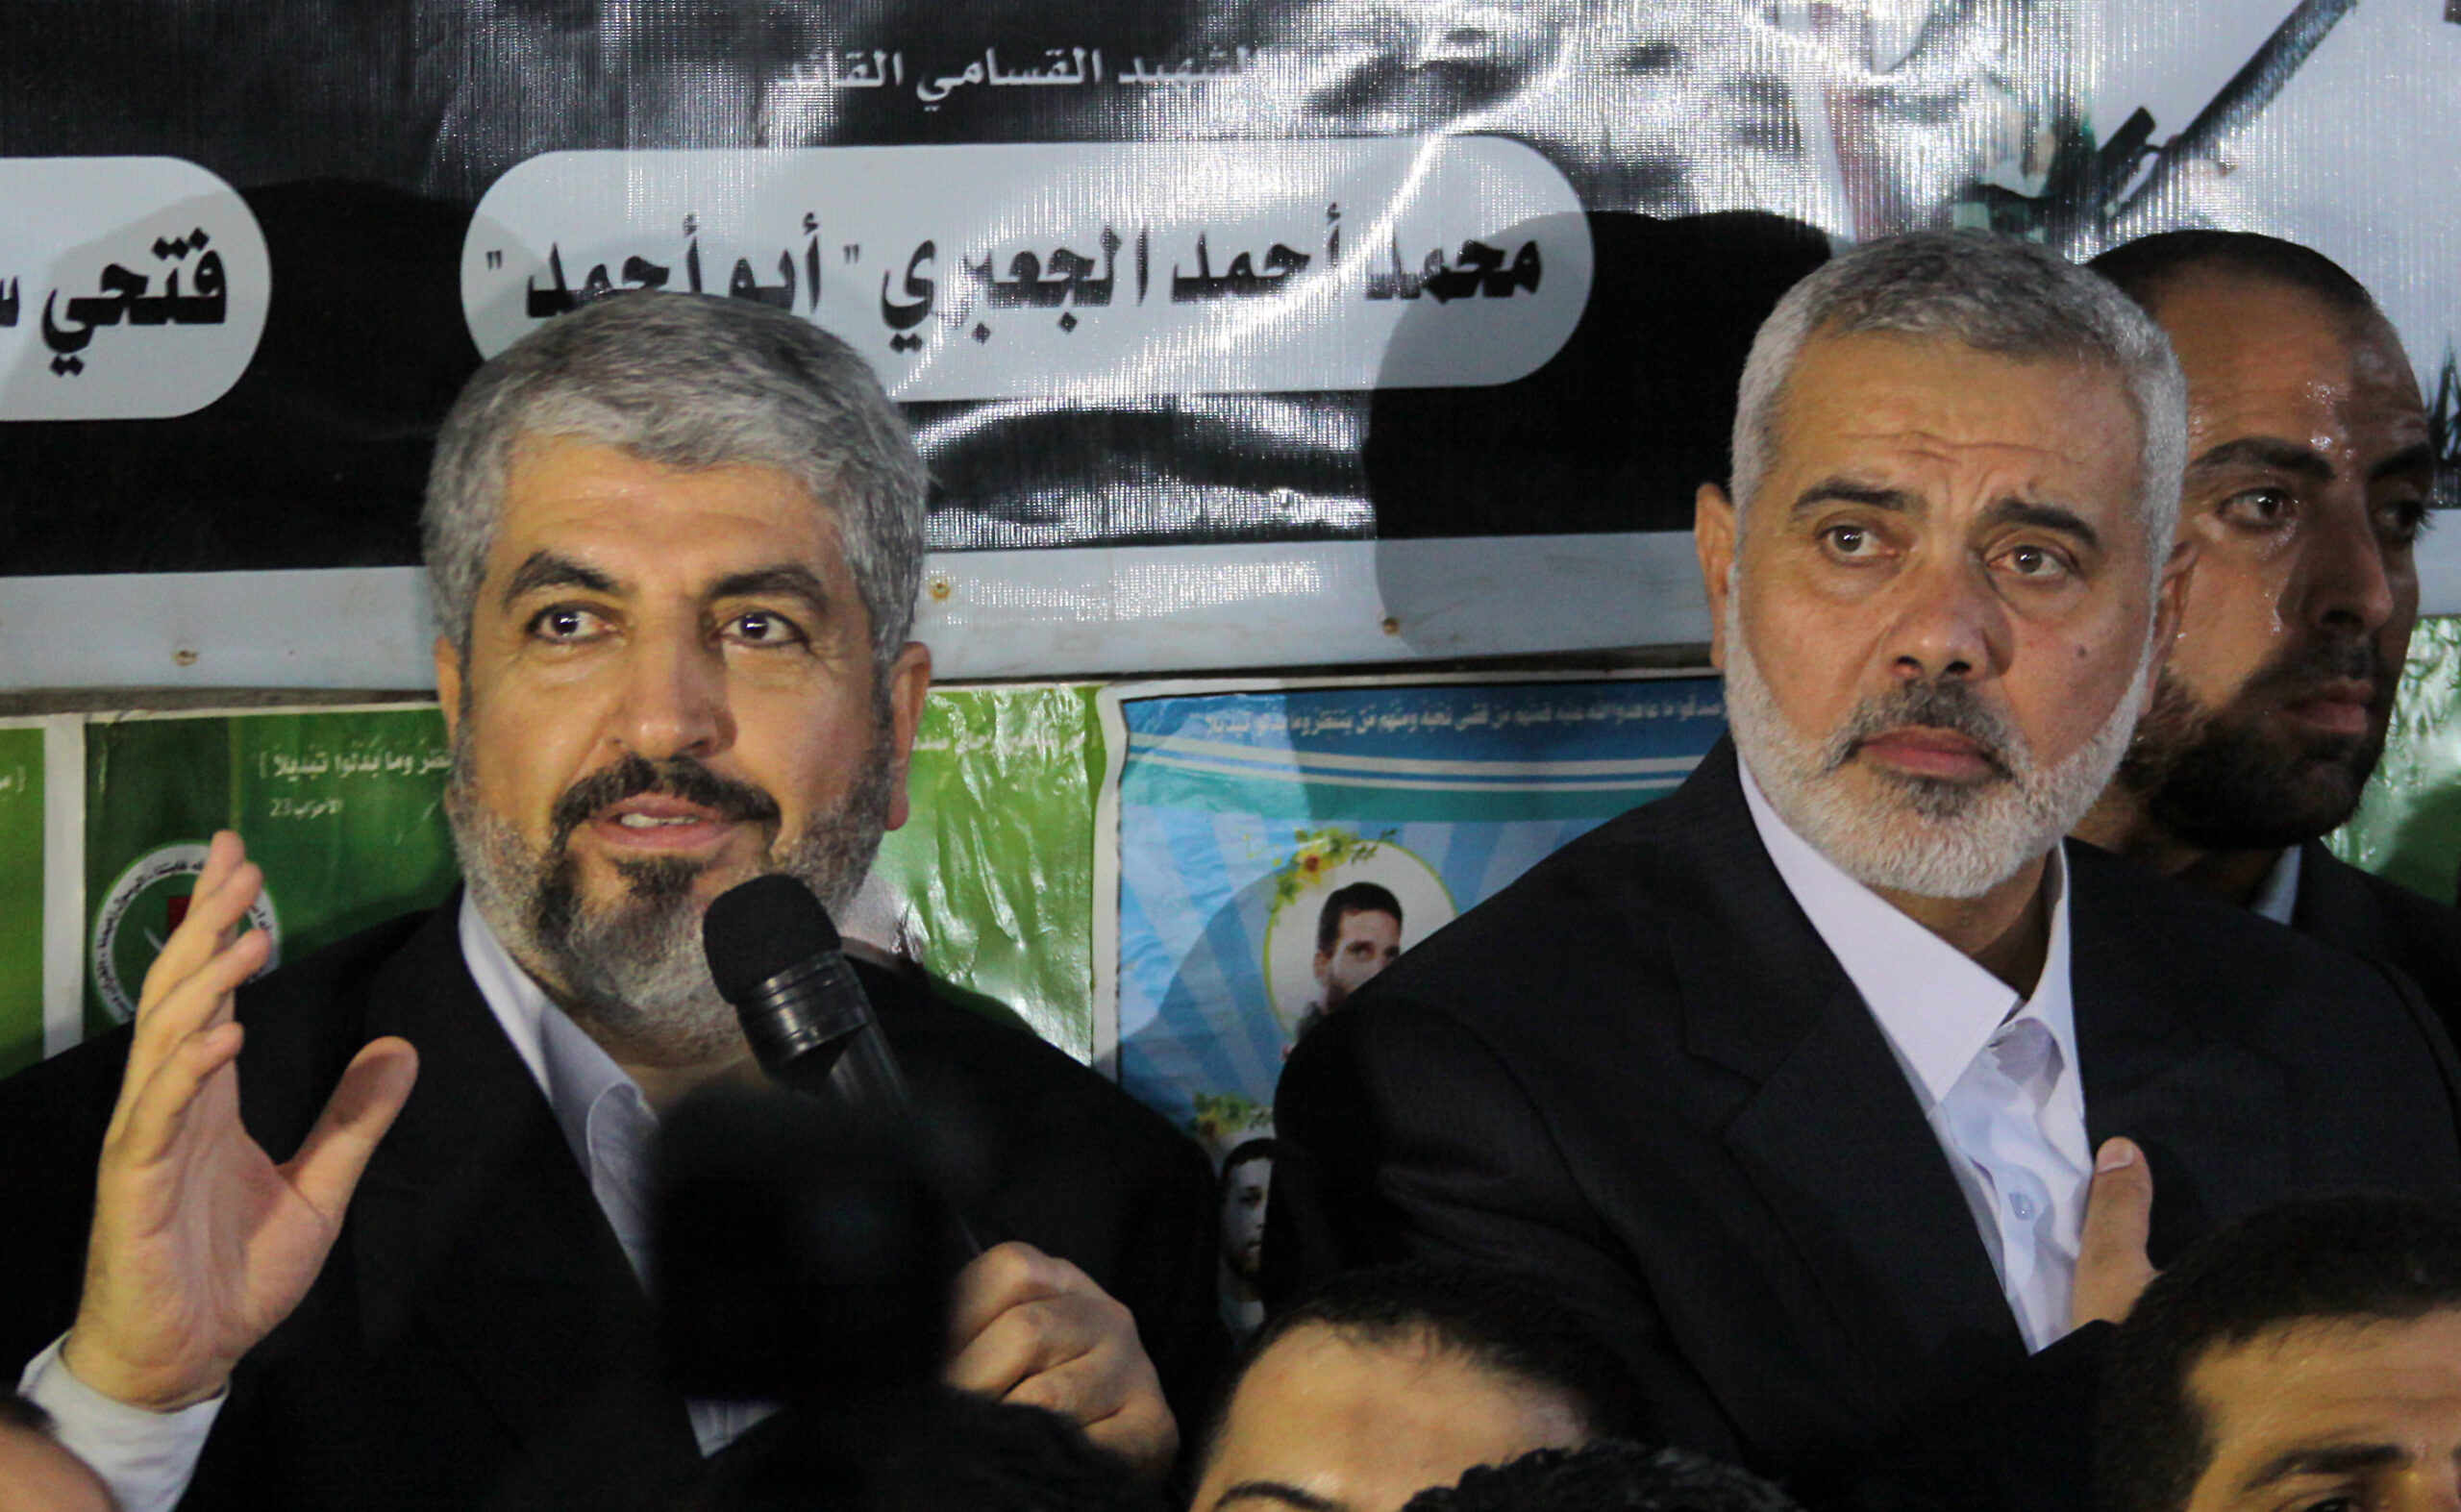 Μυστική συνάντηση των ηγετών της Χαμάς στην Τουρκία